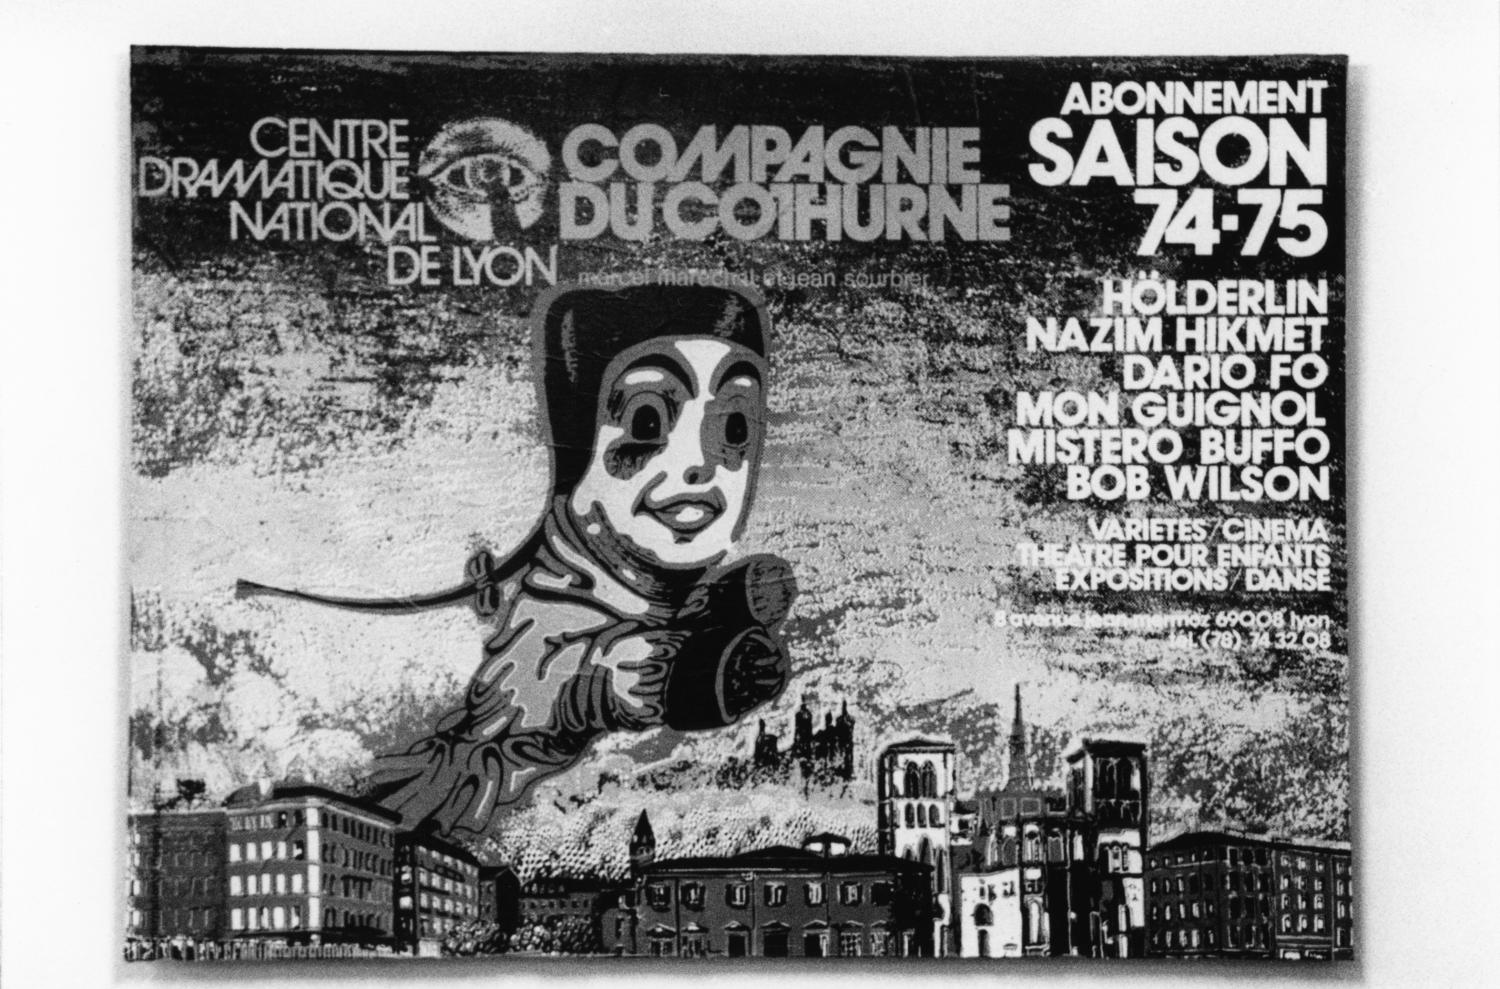 [Affiche de la Compagnie du Cothurne - Centre dramatique national de Lyon (dir. Marcel Maréchal et Jean Sourbier ; saison 1974-1975)]